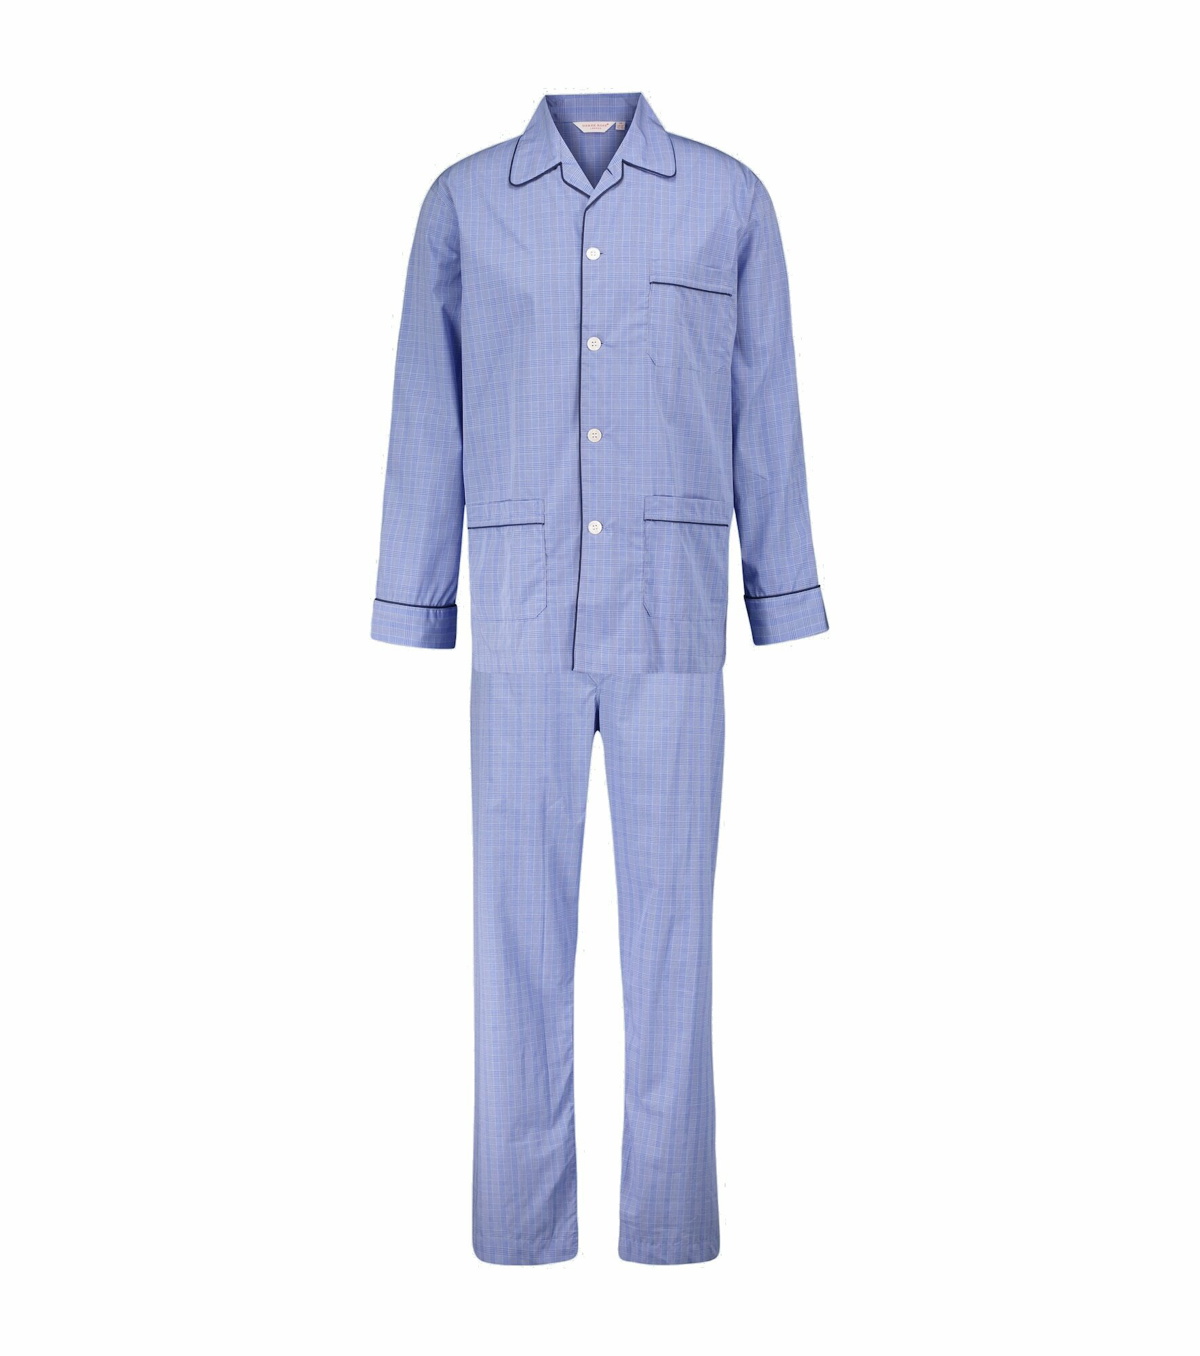 Derek Rose - Felsted 3 checked cotton pajama set Derek Rose